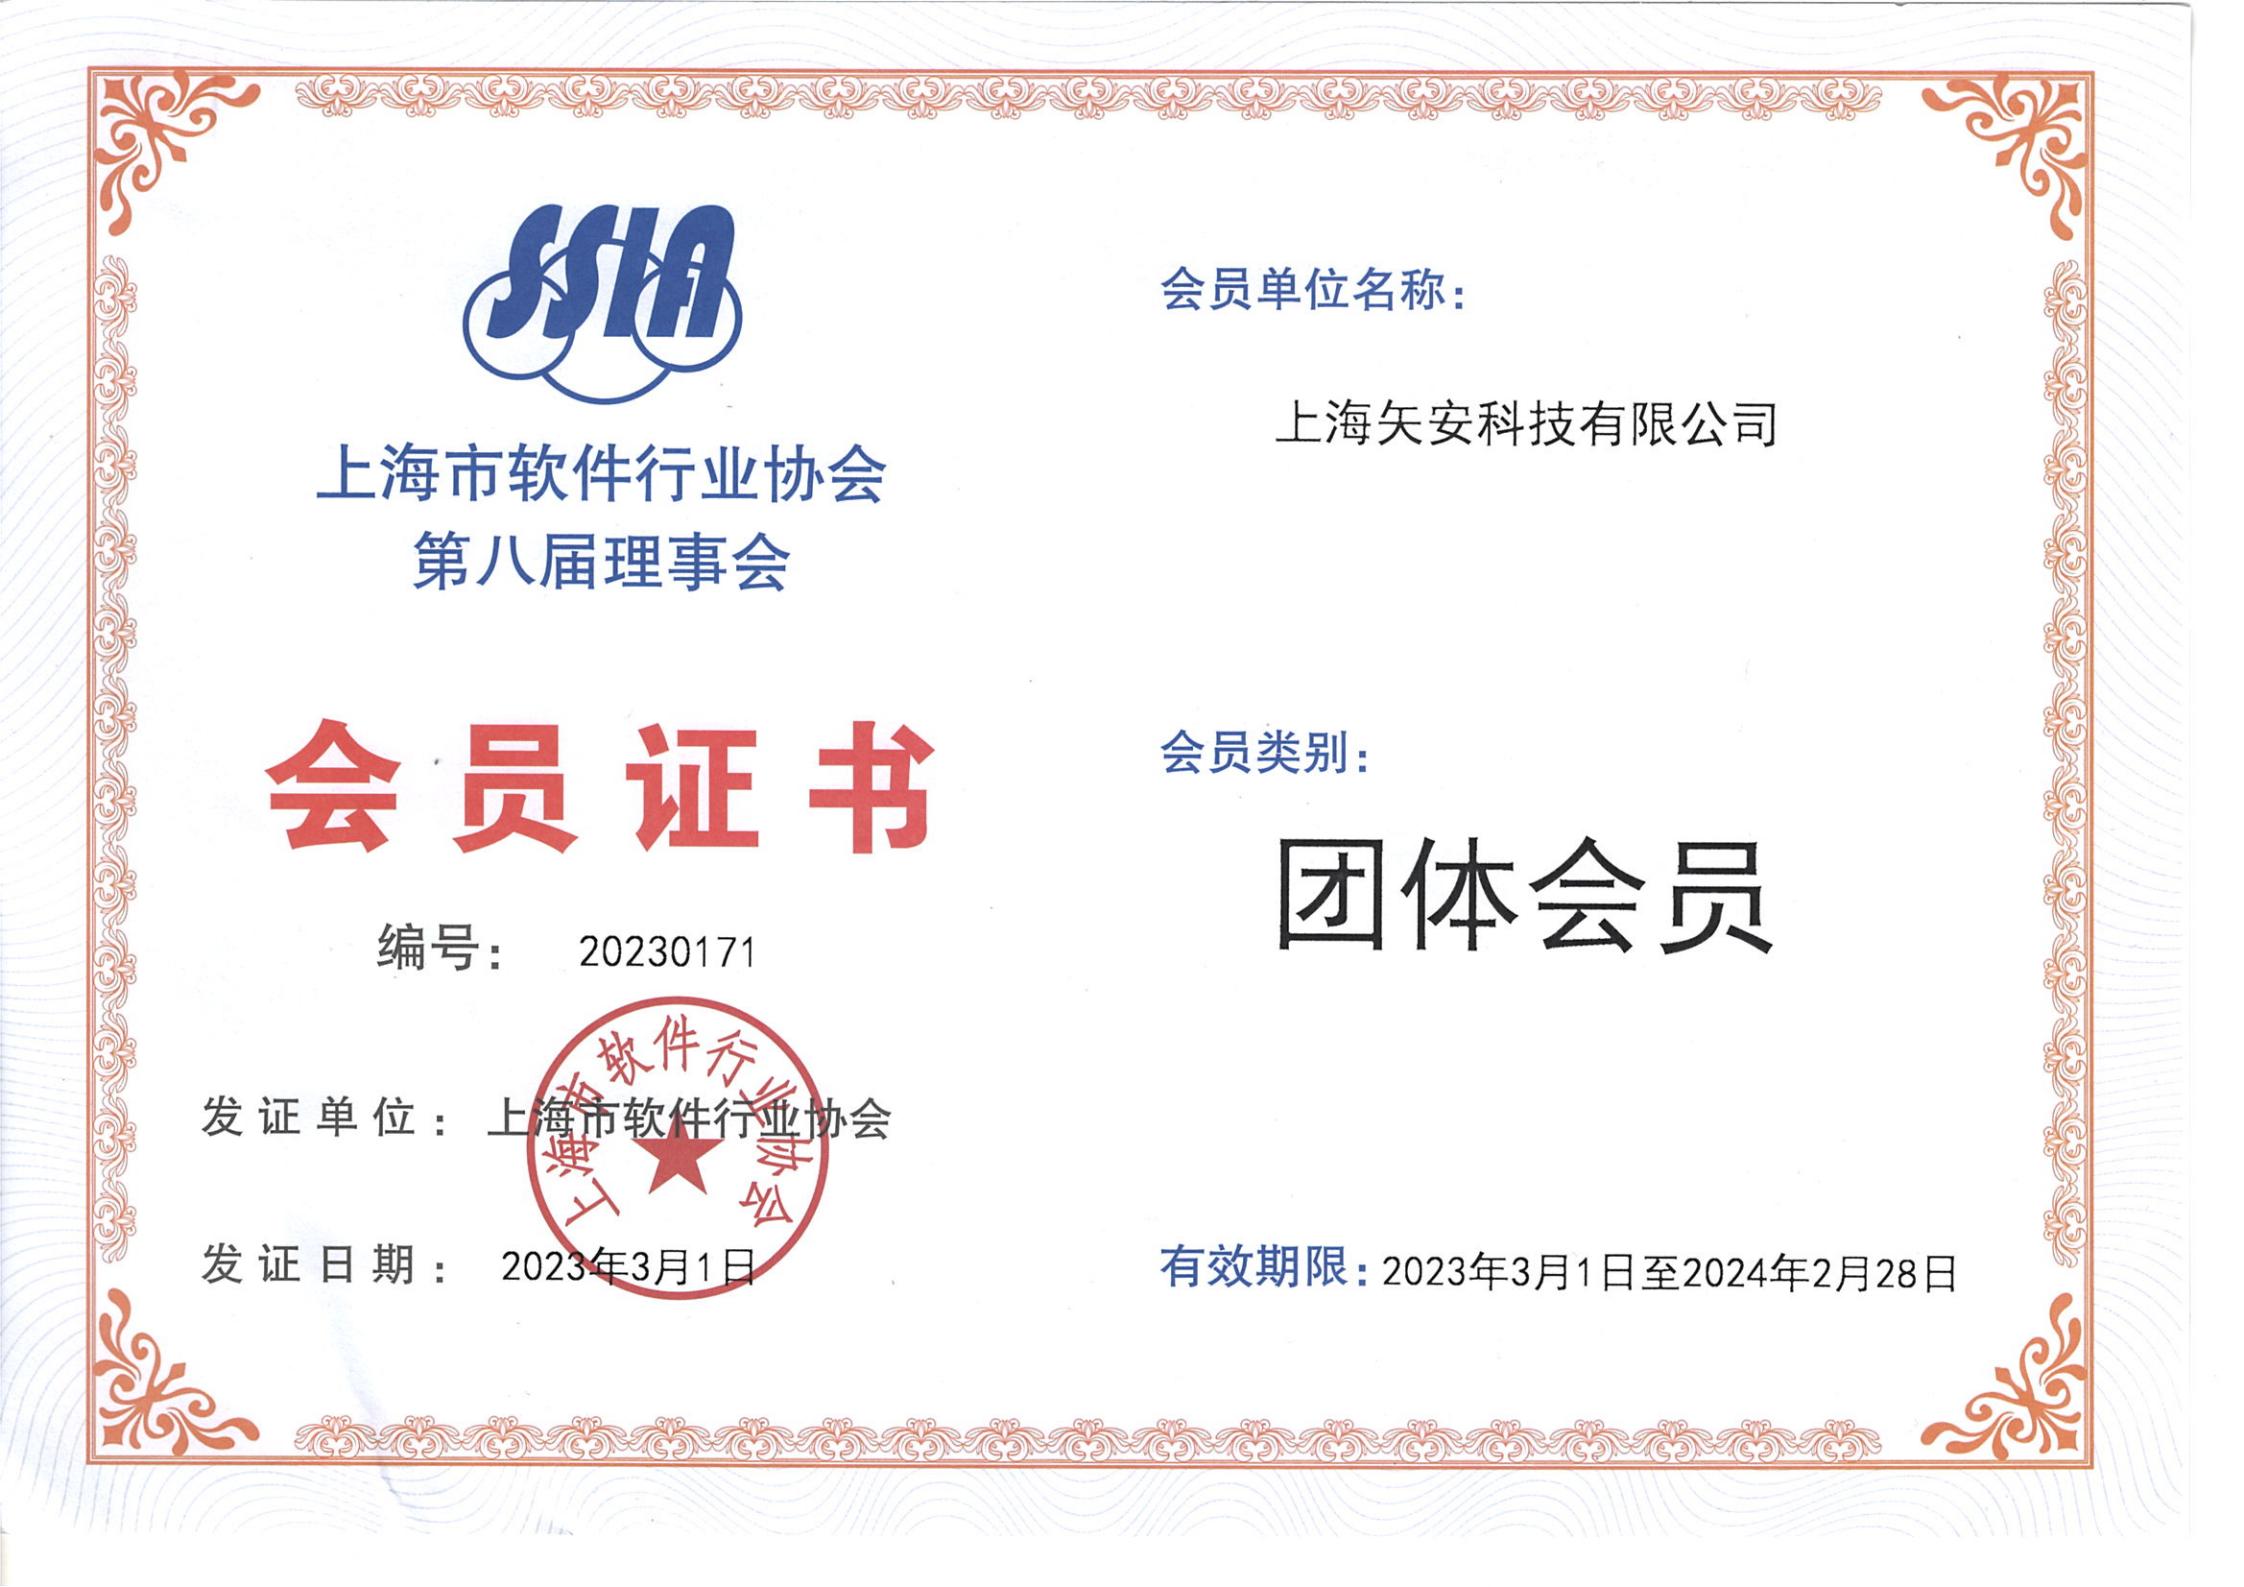 上海市软件行业协会会员单位